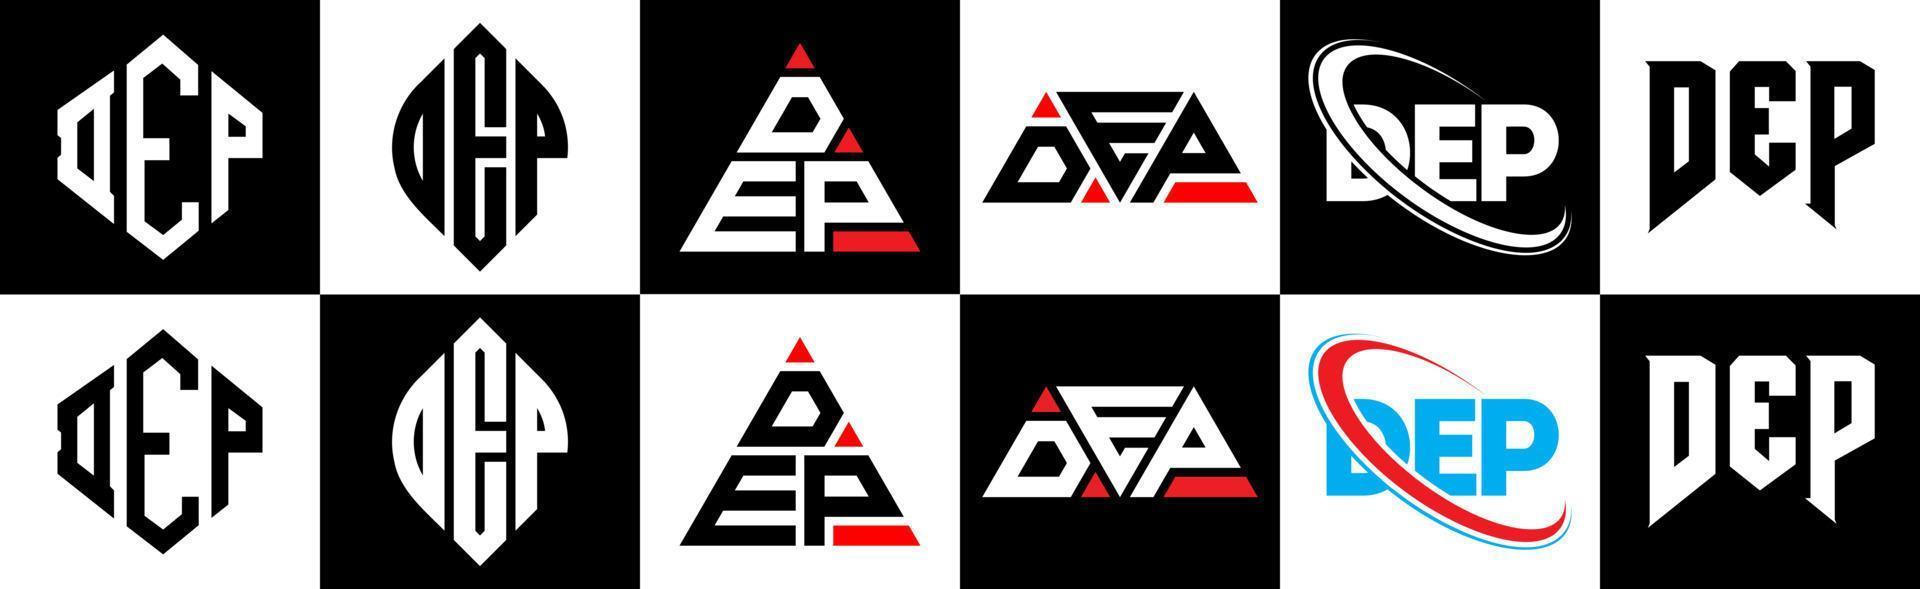 dep-Buchstaben-Logo-Design in sechs Stilen. Dep Polygon, Kreis, Dreieck, Sechseck, flacher und einfacher Stil mit schwarzem und weißem Farbvariations-Buchstabenlogo in einer Zeichenfläche. Dep minimalistisches und klassisches Logo vektor